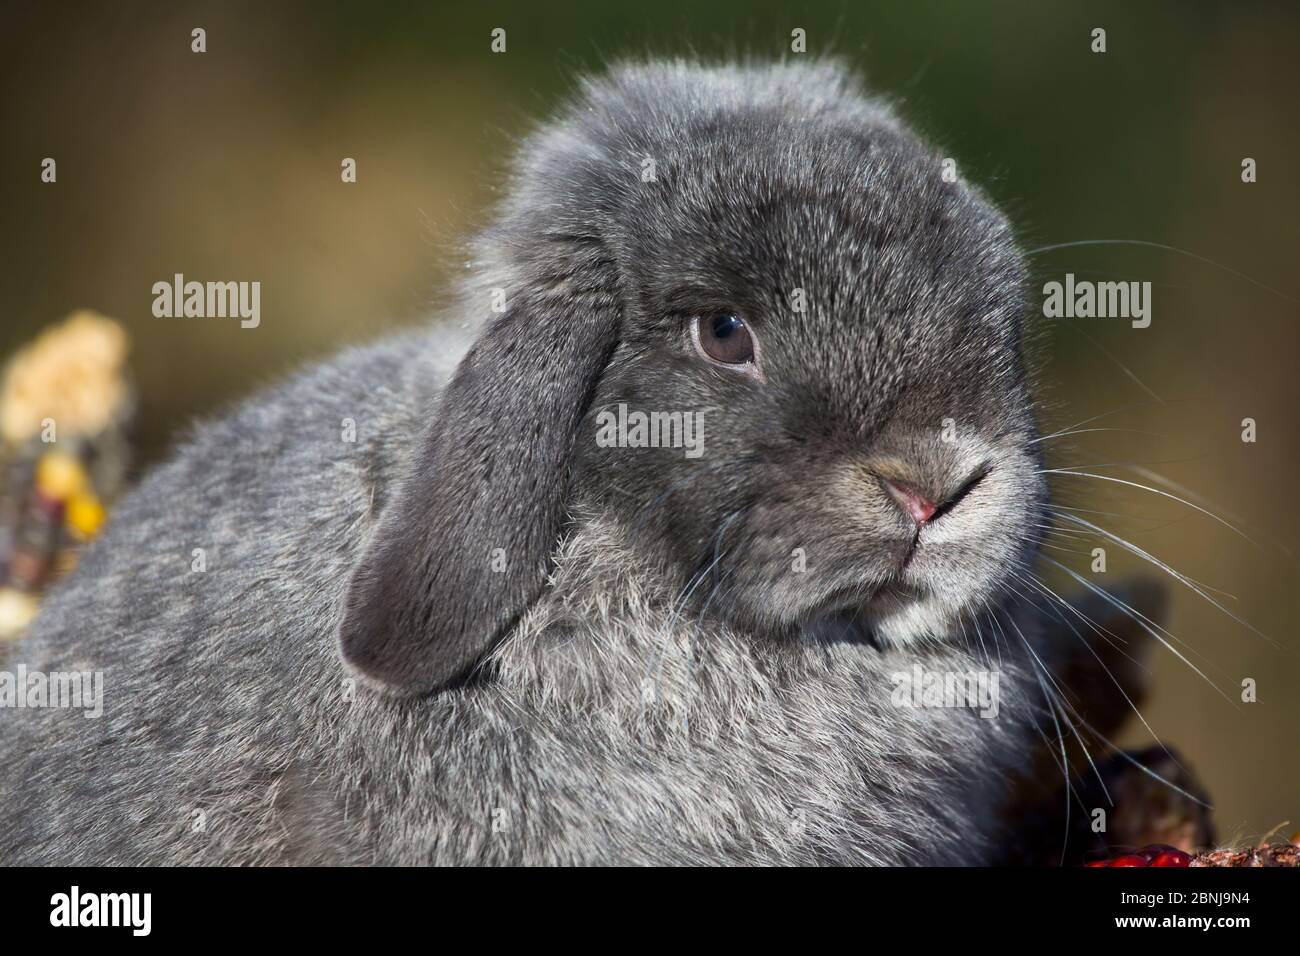 Portrait of Holland Lop rabbit, Newington, Connecticut, USA Stock Photo